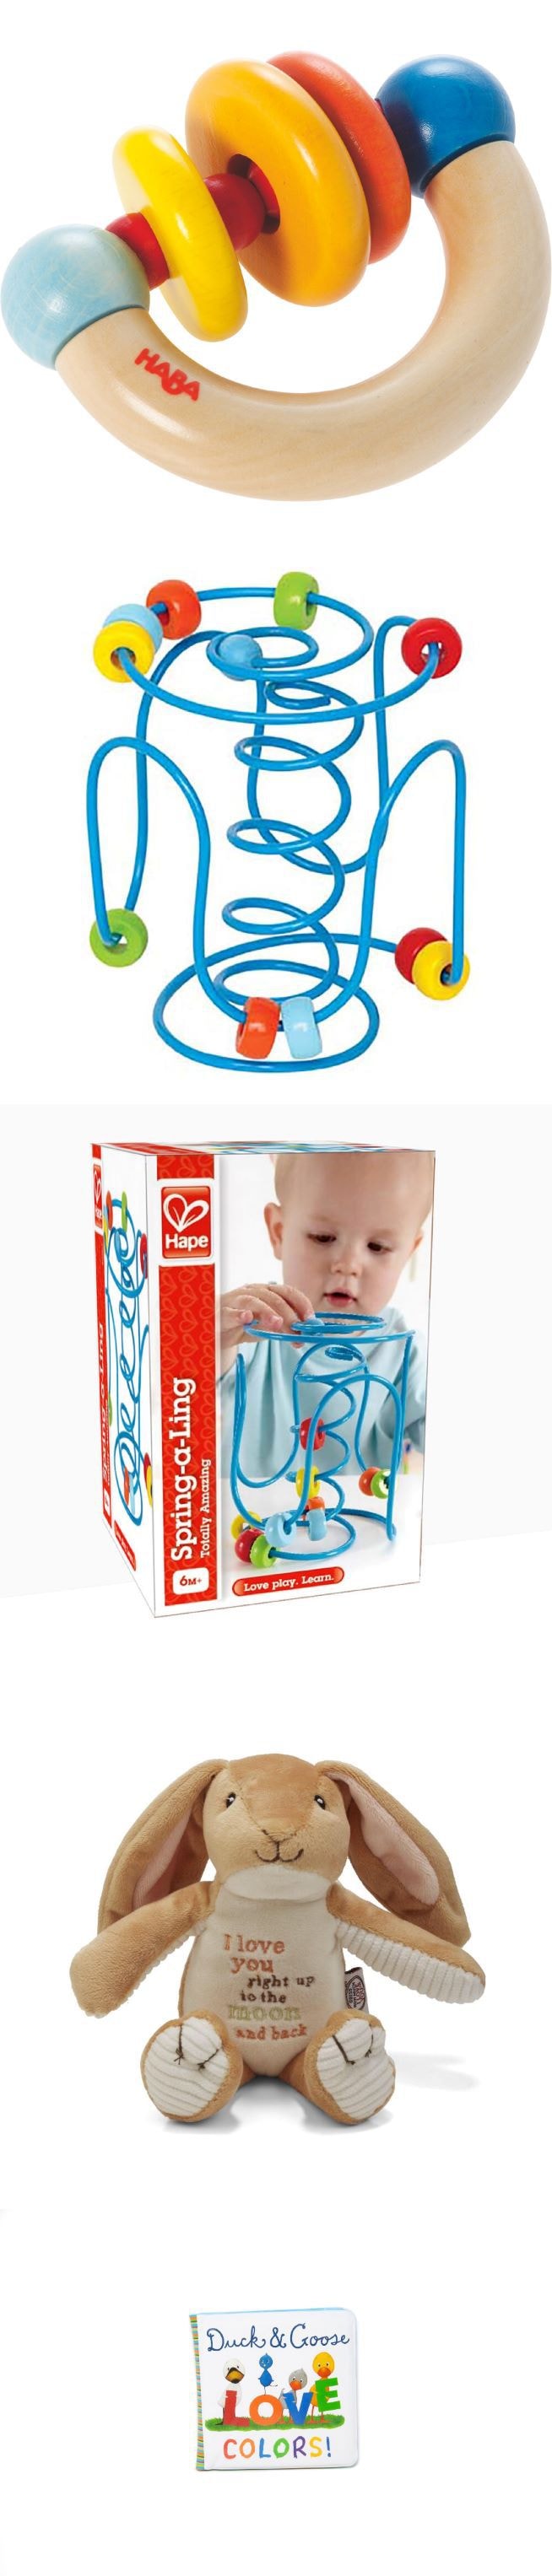 美国 BAE BAE BOX  6个月宝宝玩具礼盒 4件套